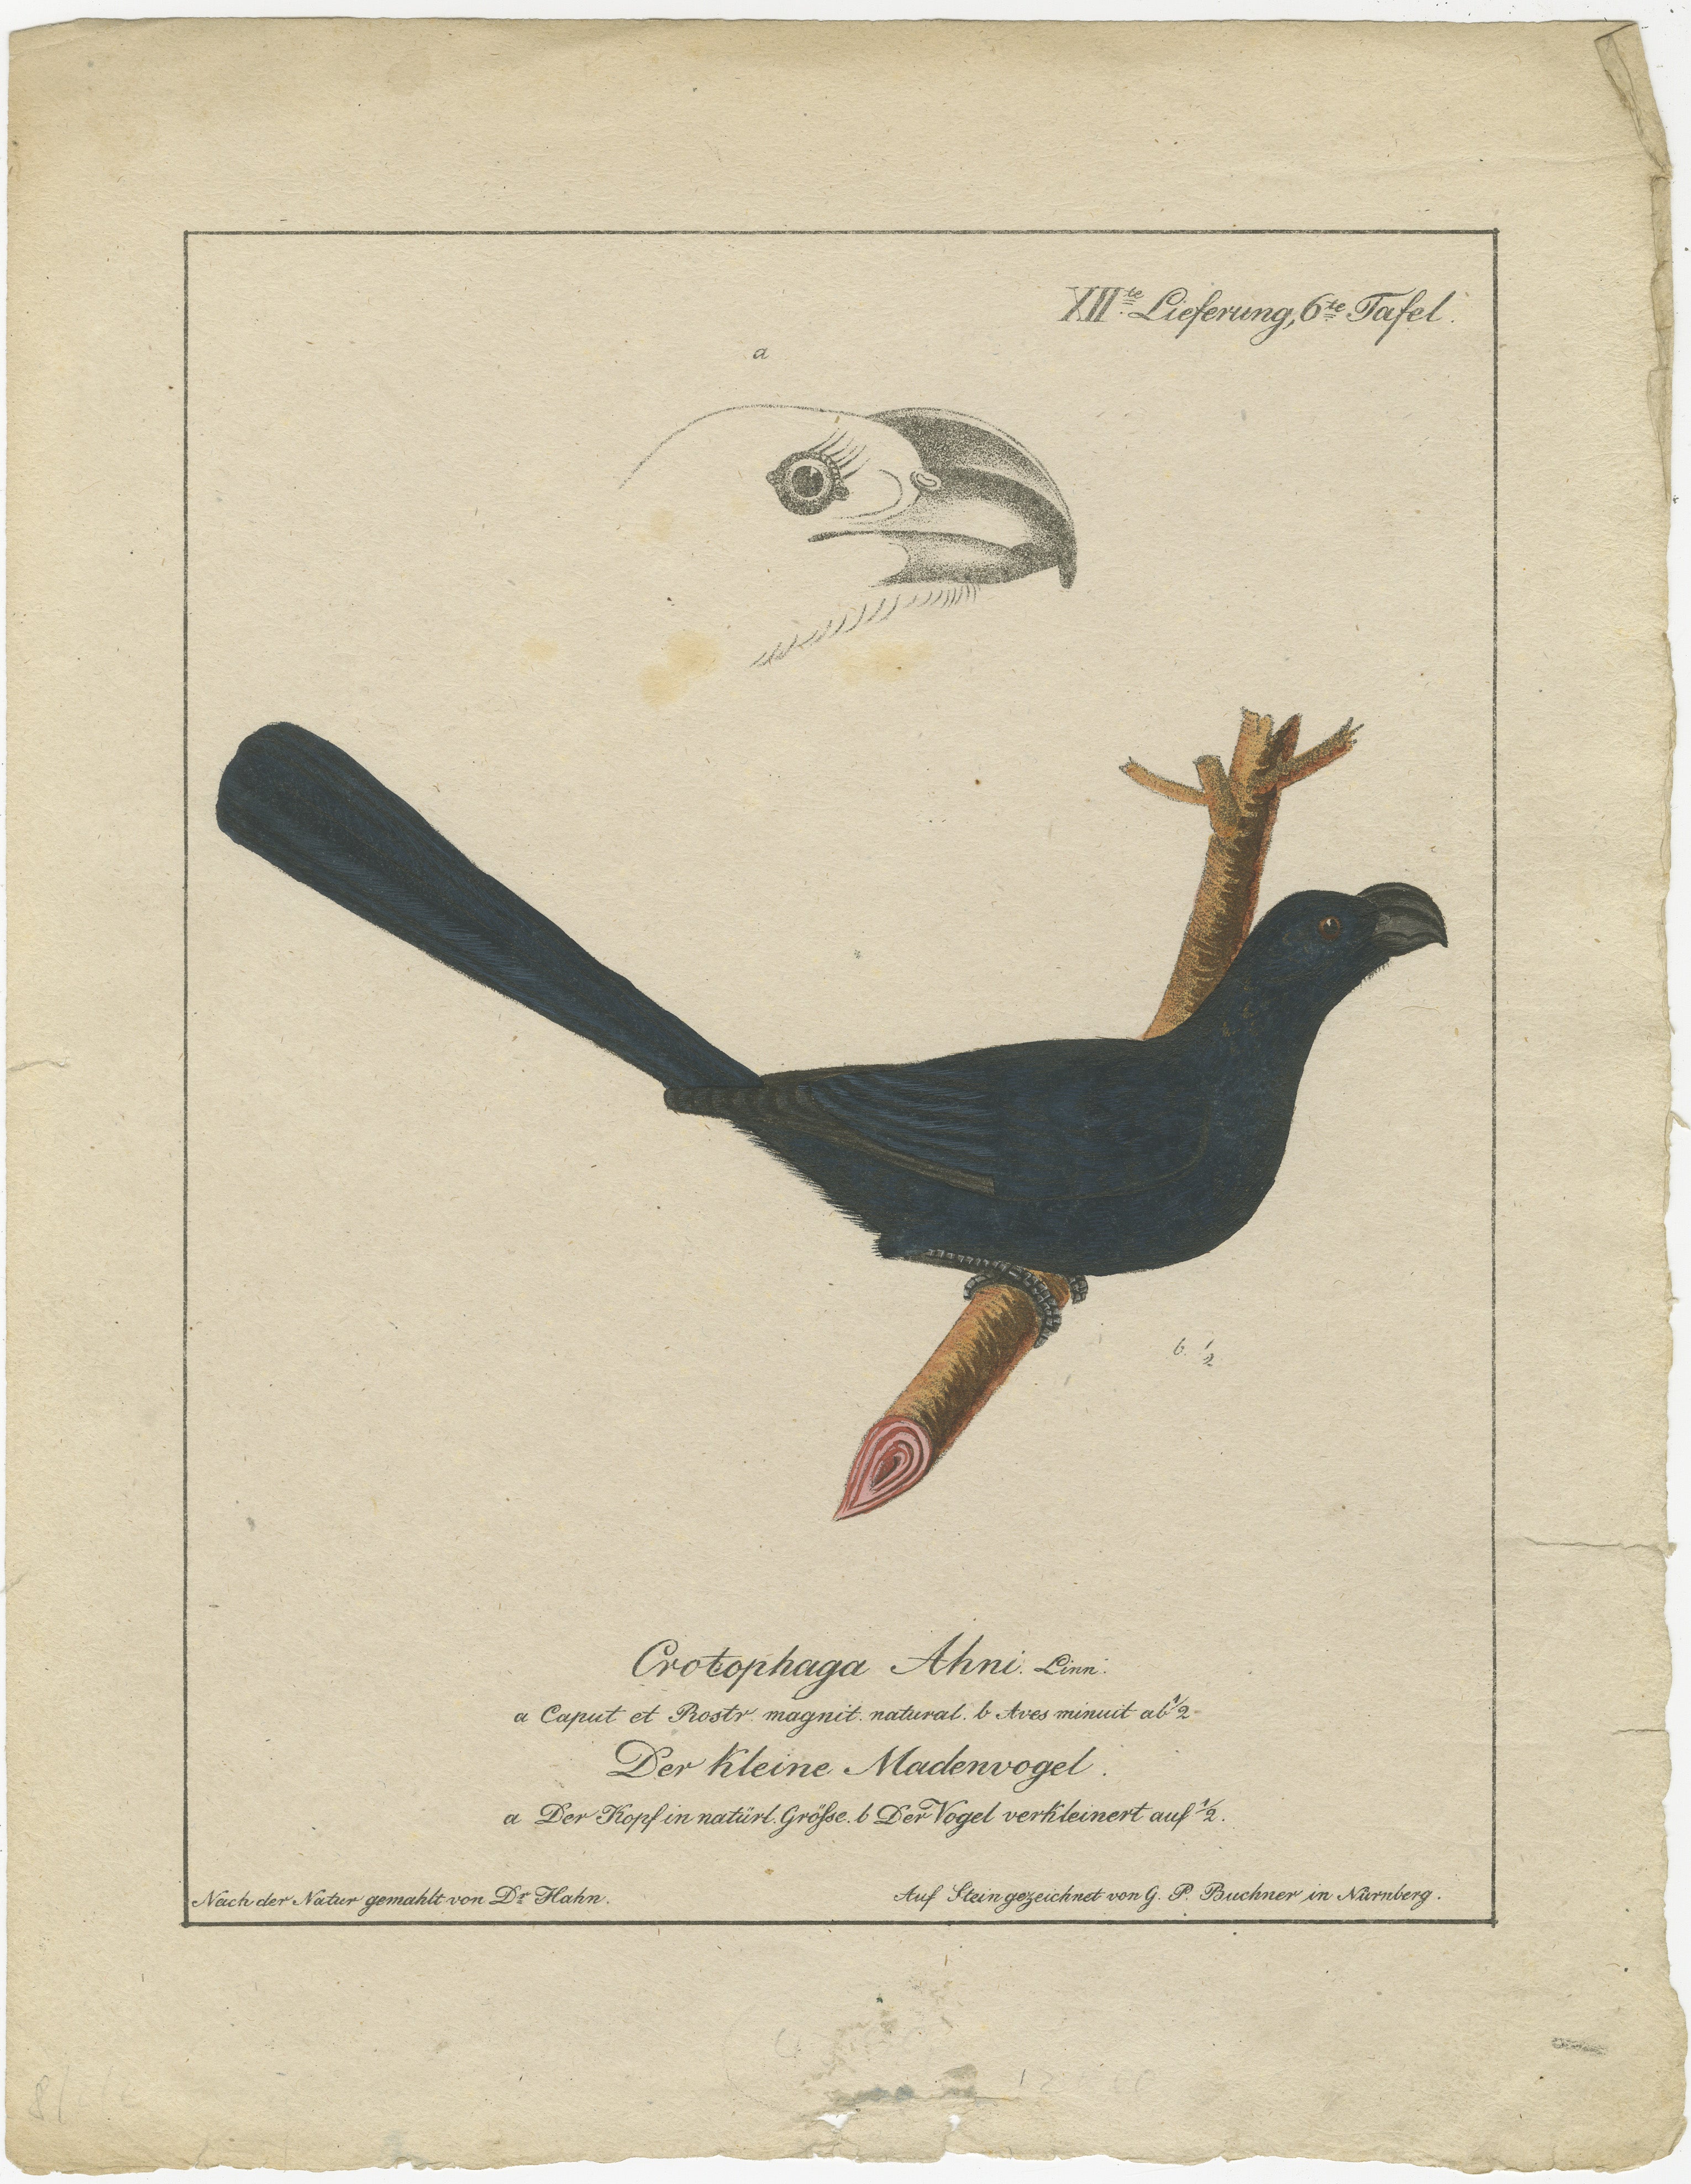 Der Druck ist eine wunderschön detaillierte handkolorierte Lithographie aus dem frühen 19. Jahrhundert, die Carl Wilhelm Hahn zugeschrieben wird. Es zeigt den Prachtkotinga (Cotinga cayana), einen Vogel, der für sein auffälliges Federkleid und seine